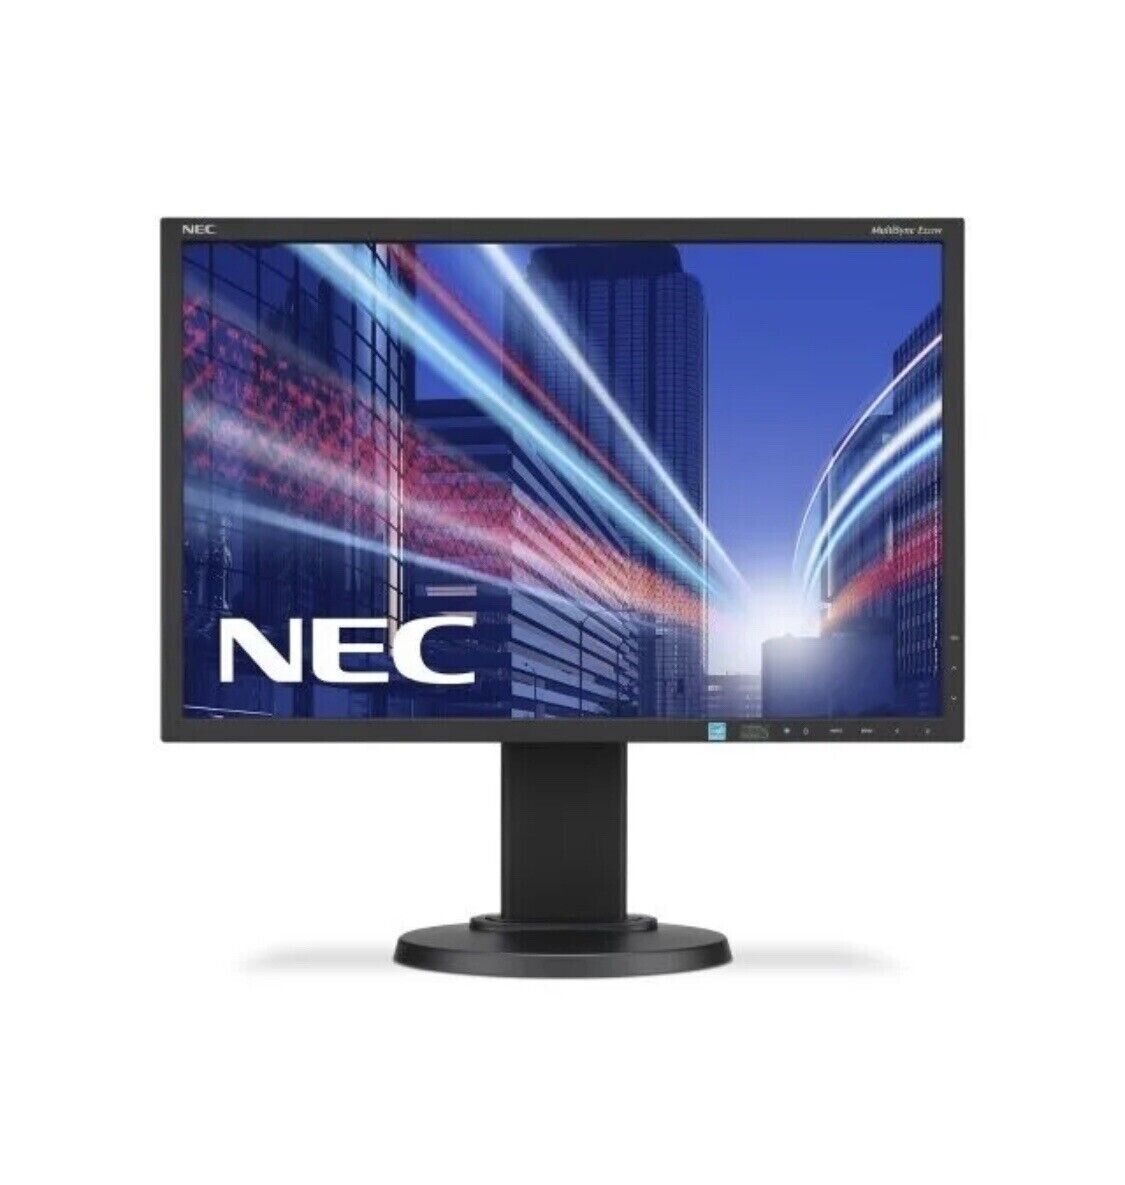 22inch LCD NEC MULTISYNC EA 223 WM Desktop Monitor with Accessories (Grade A)